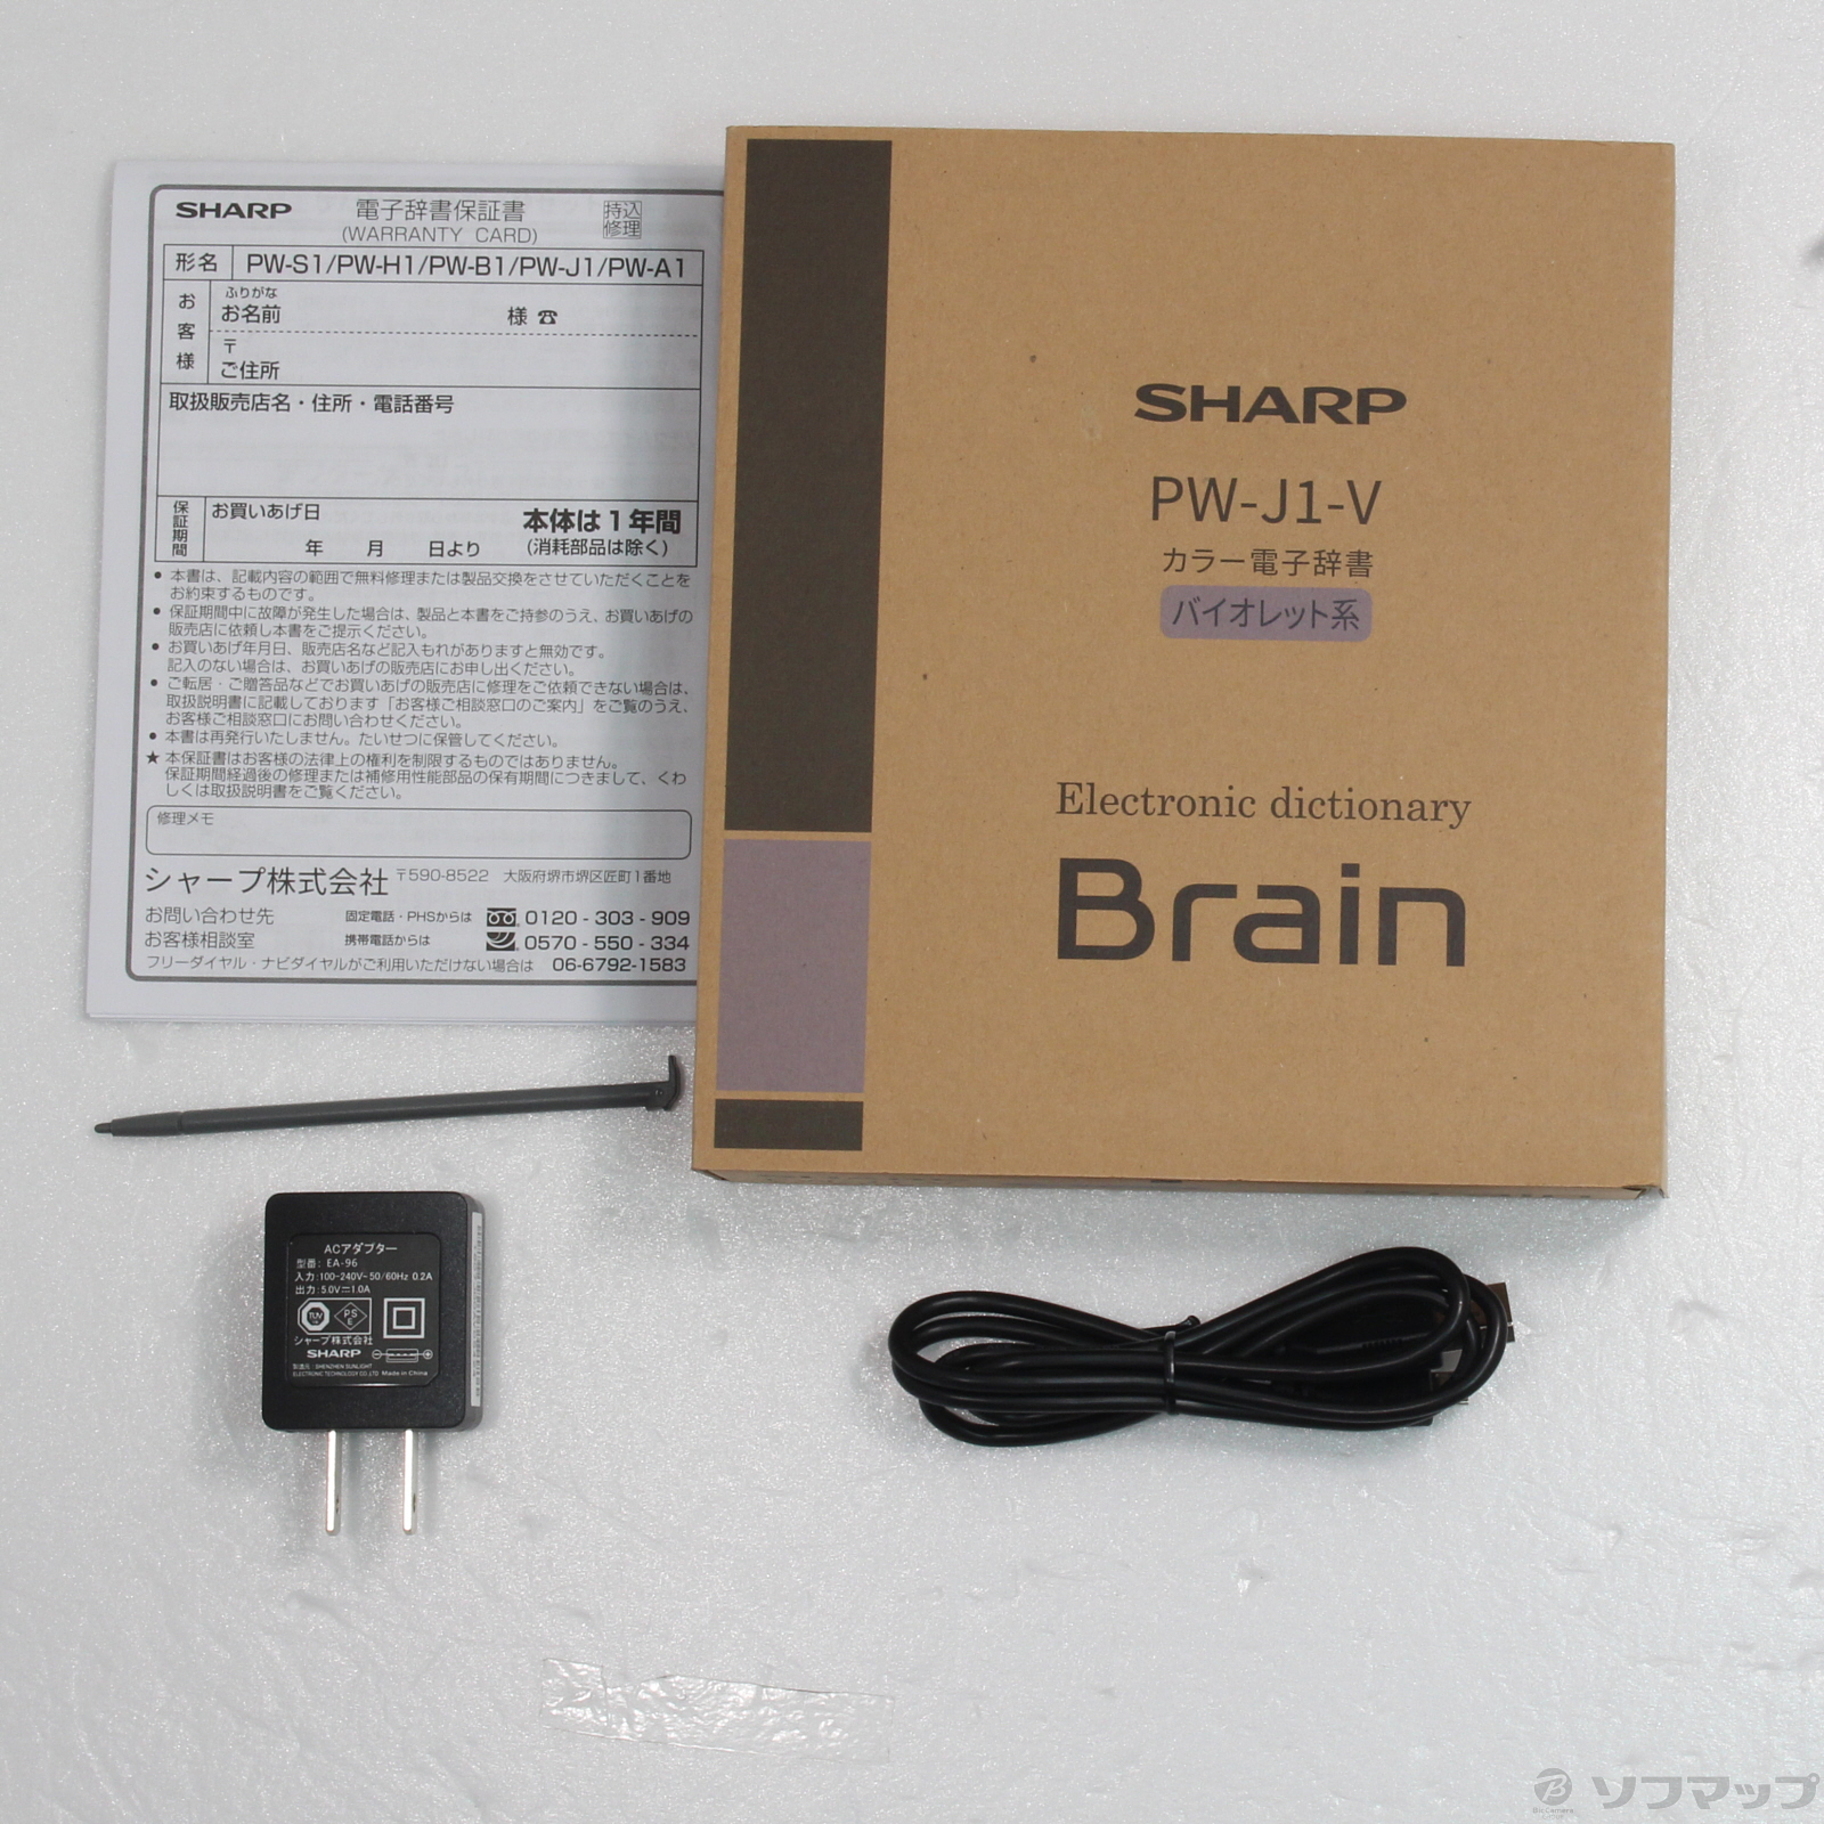 シャープ PW-J1-V カラー電子辞書 Brain 中学生モデル バイオレット系 - 5